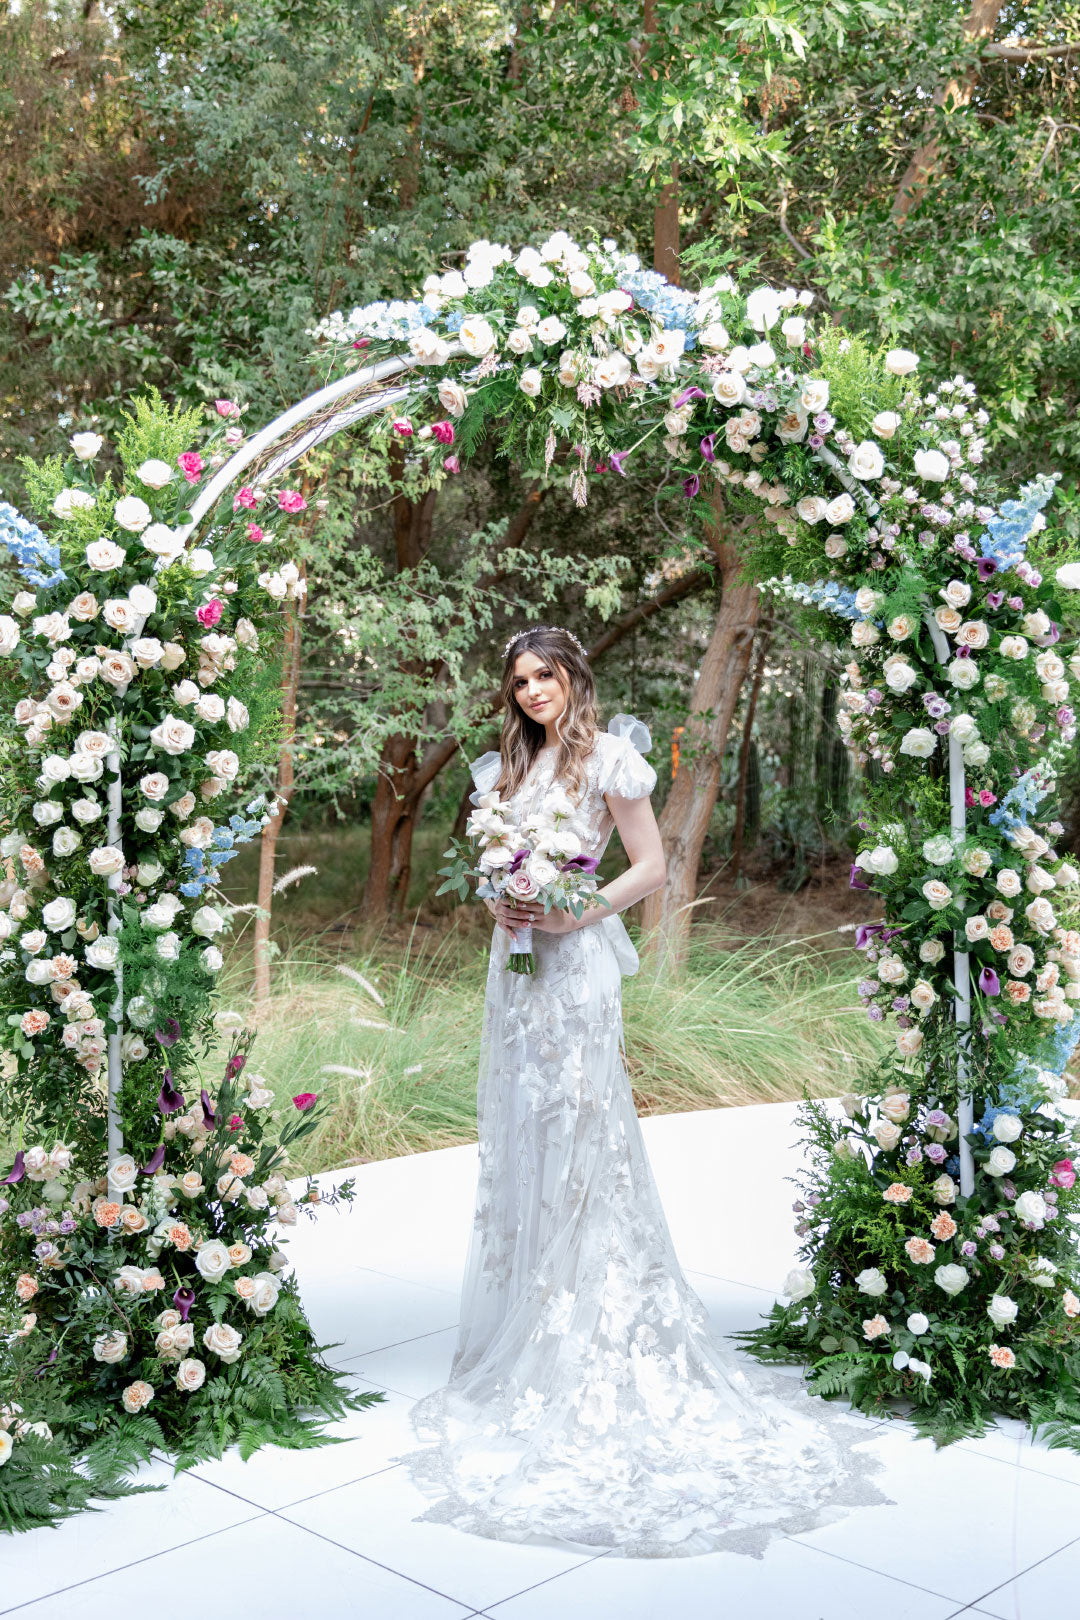 Bride under wedding floral display